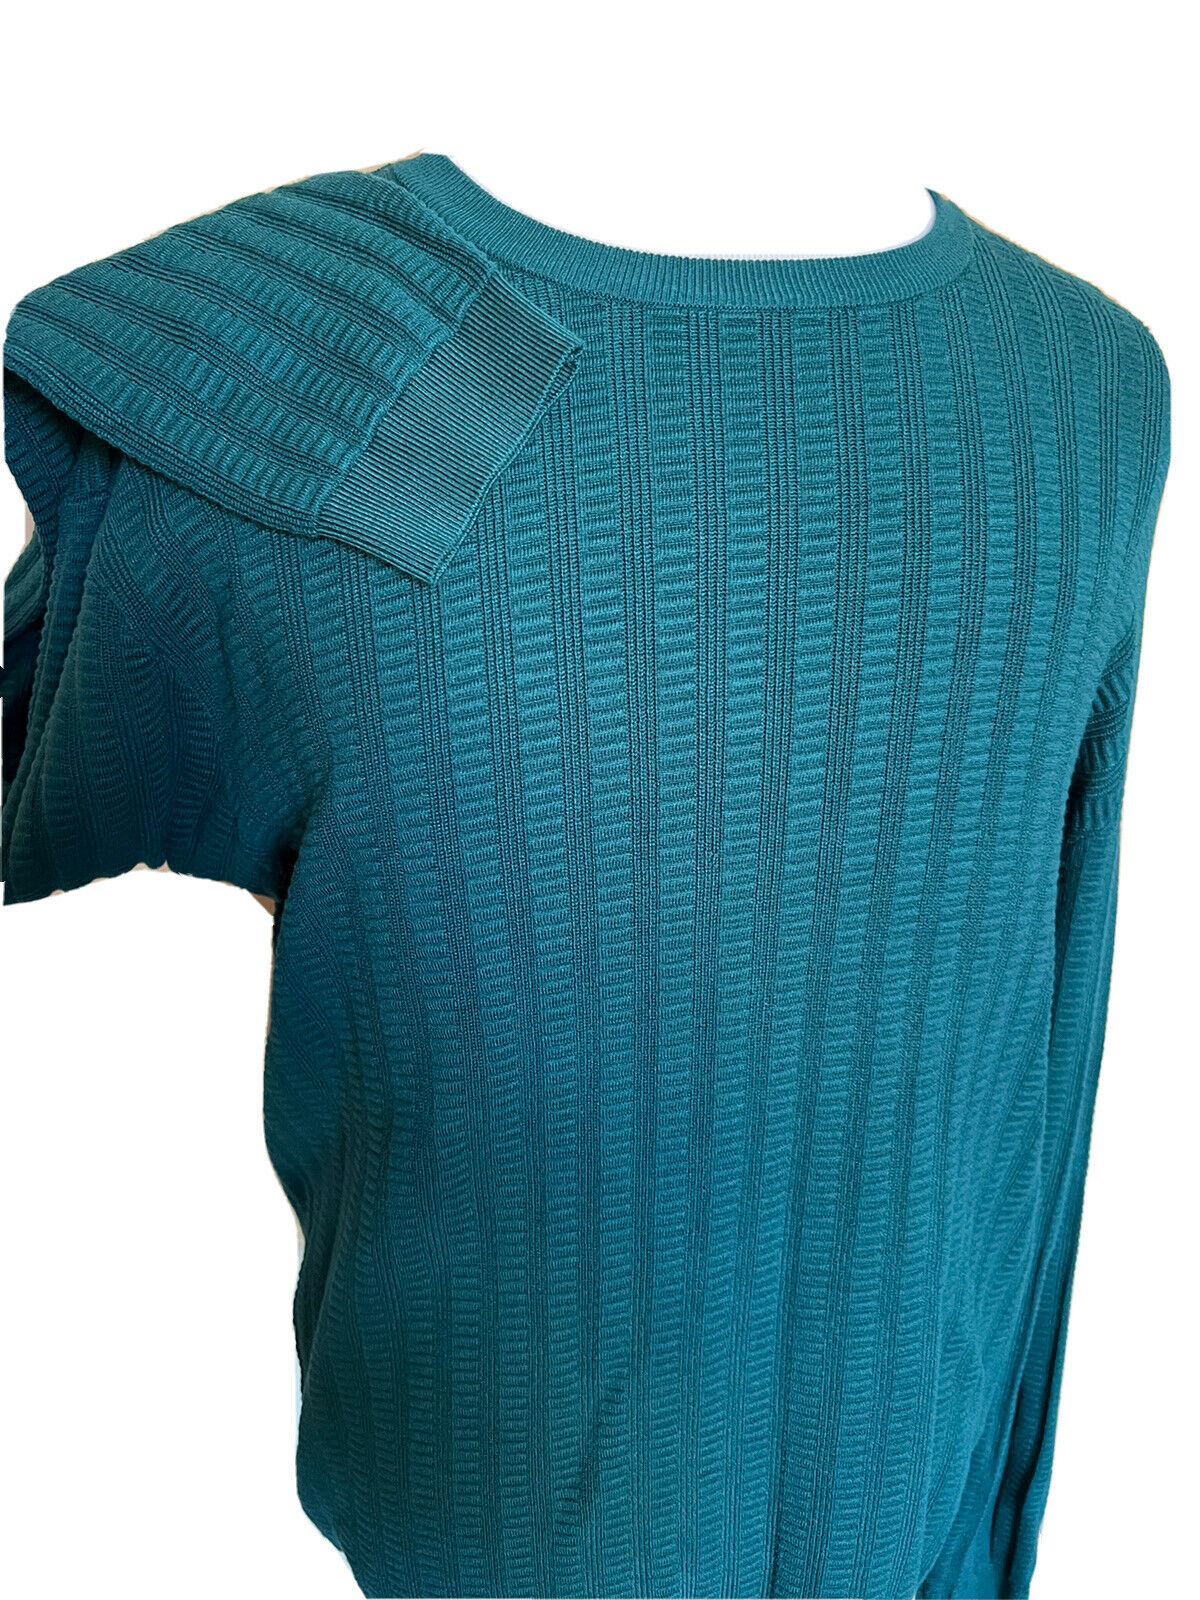 Зеленый свитер с круглым вырезом Emporio Armani 2XL 3H1MT2 NWT 295 долларов США